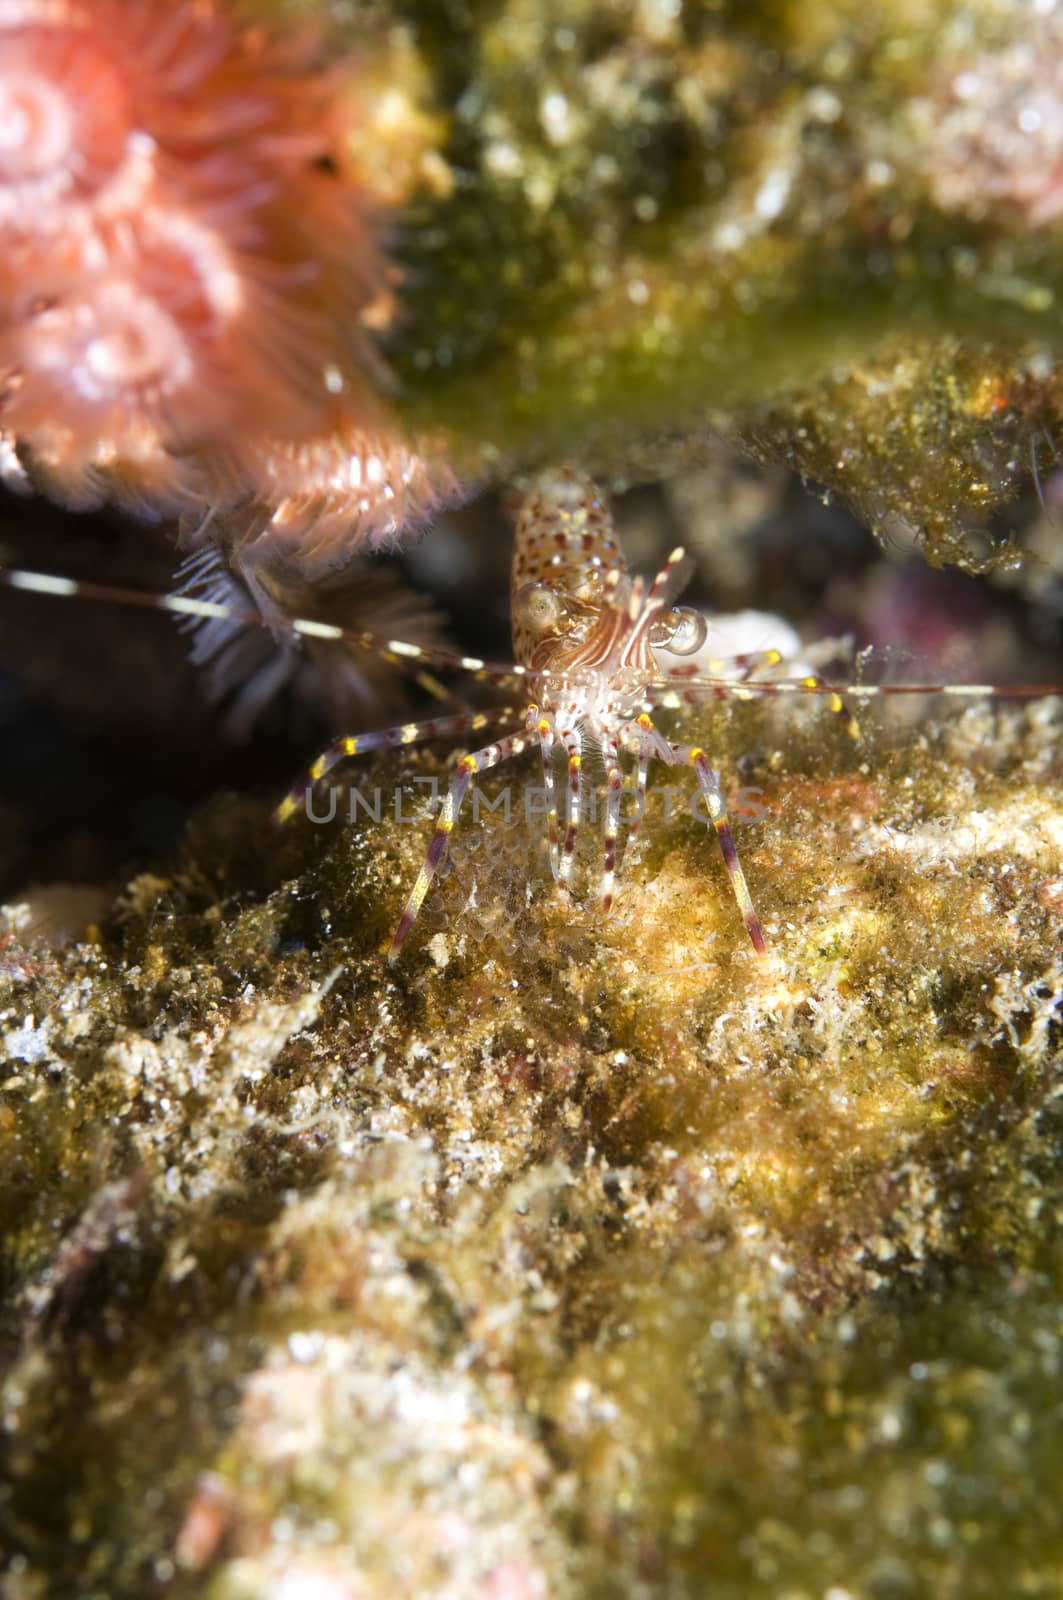 Coonstriped shrimp (Pandalus hypsinotus)